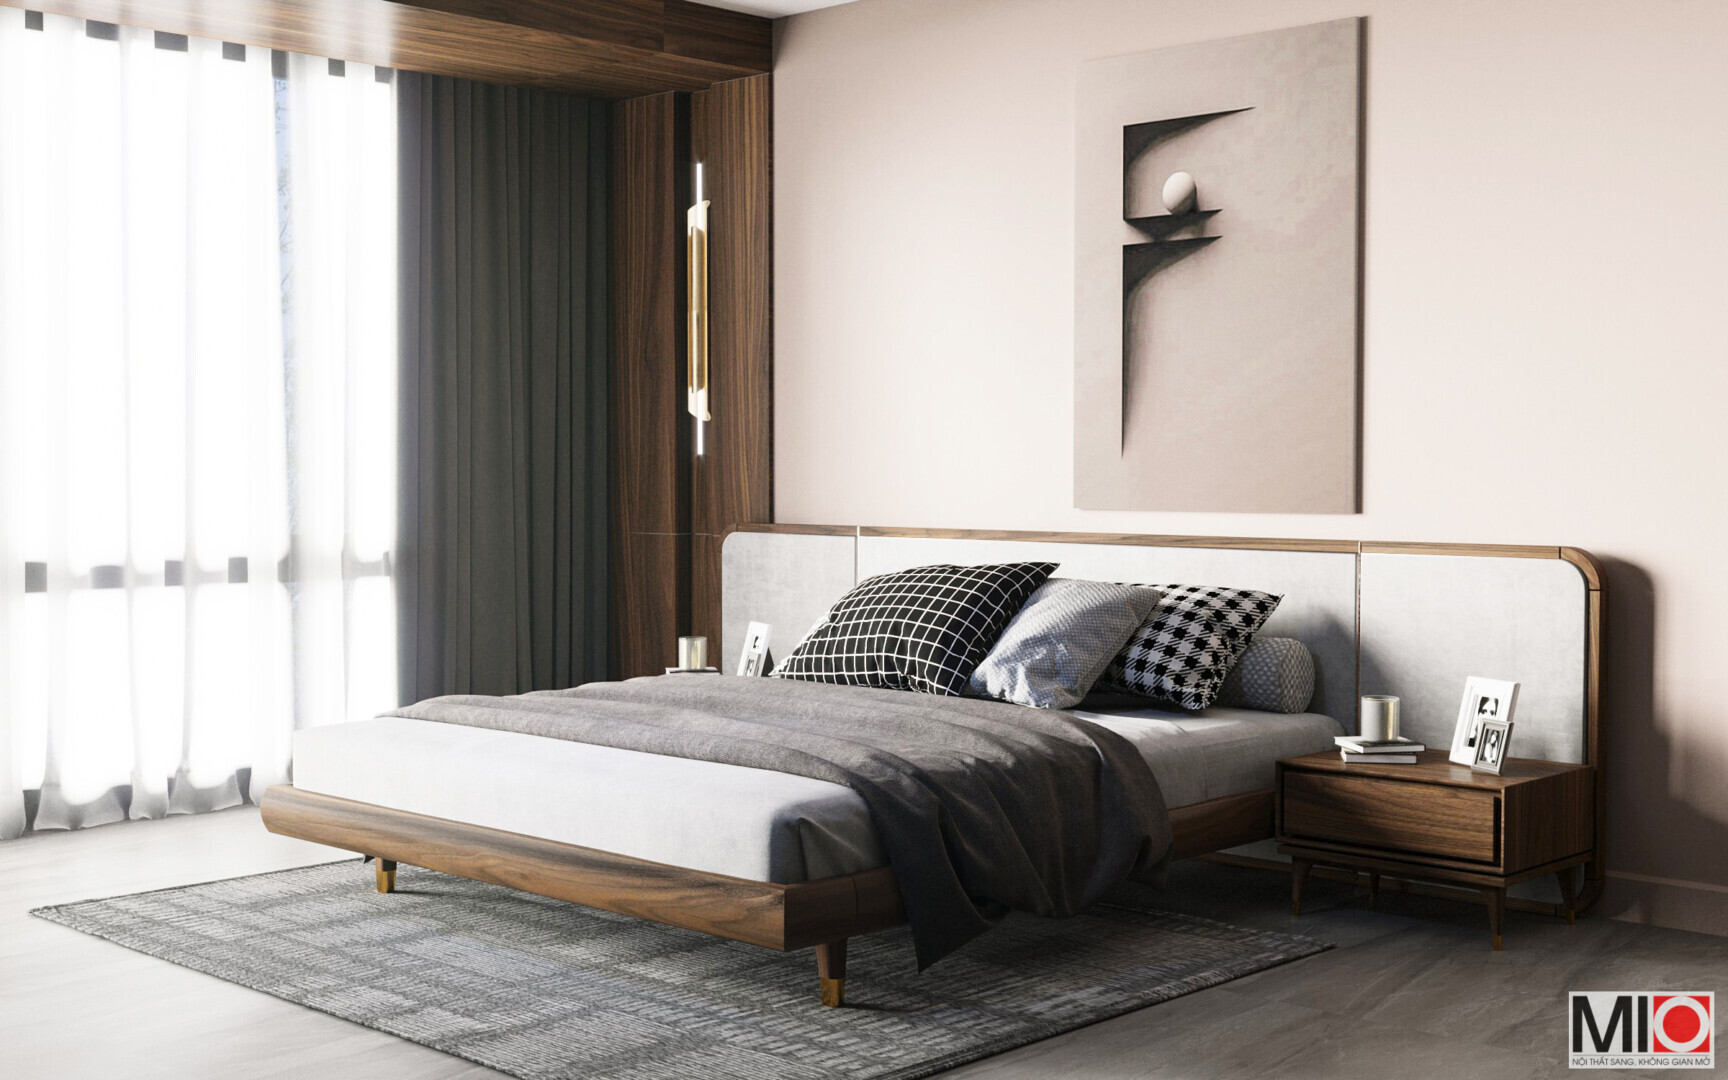 Phong cách thiết kế giường ngủ gỗ tự nhiên tại NỘI THẤT MIO